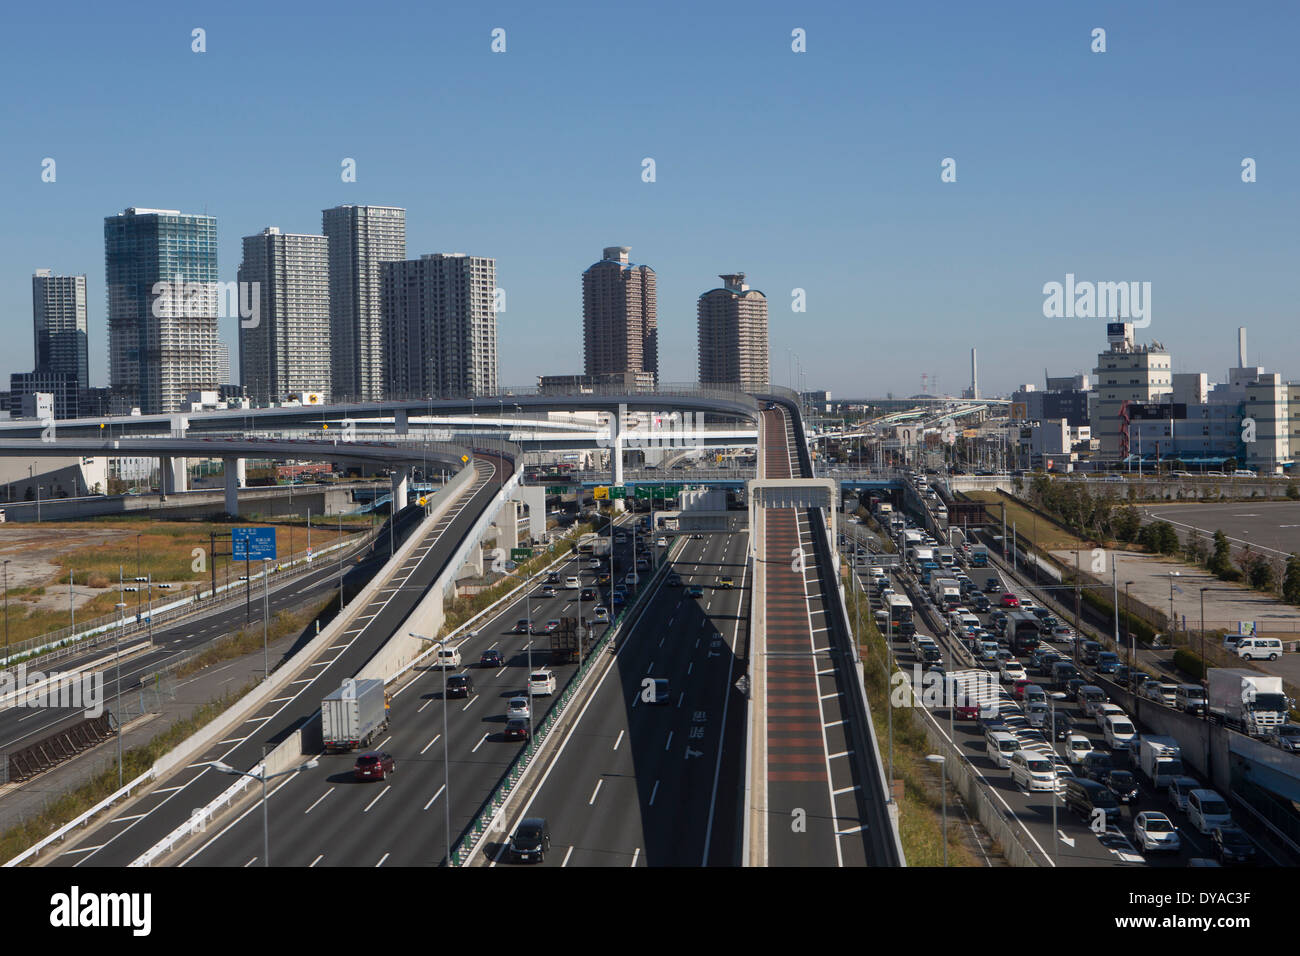 Reisen Japan Asien Tokyo City Architektur Brücke beschäftigt Expressway Autobahn Stau neu zurückgefordert Bahnhof Verkehr Landverkehr, Stockfoto